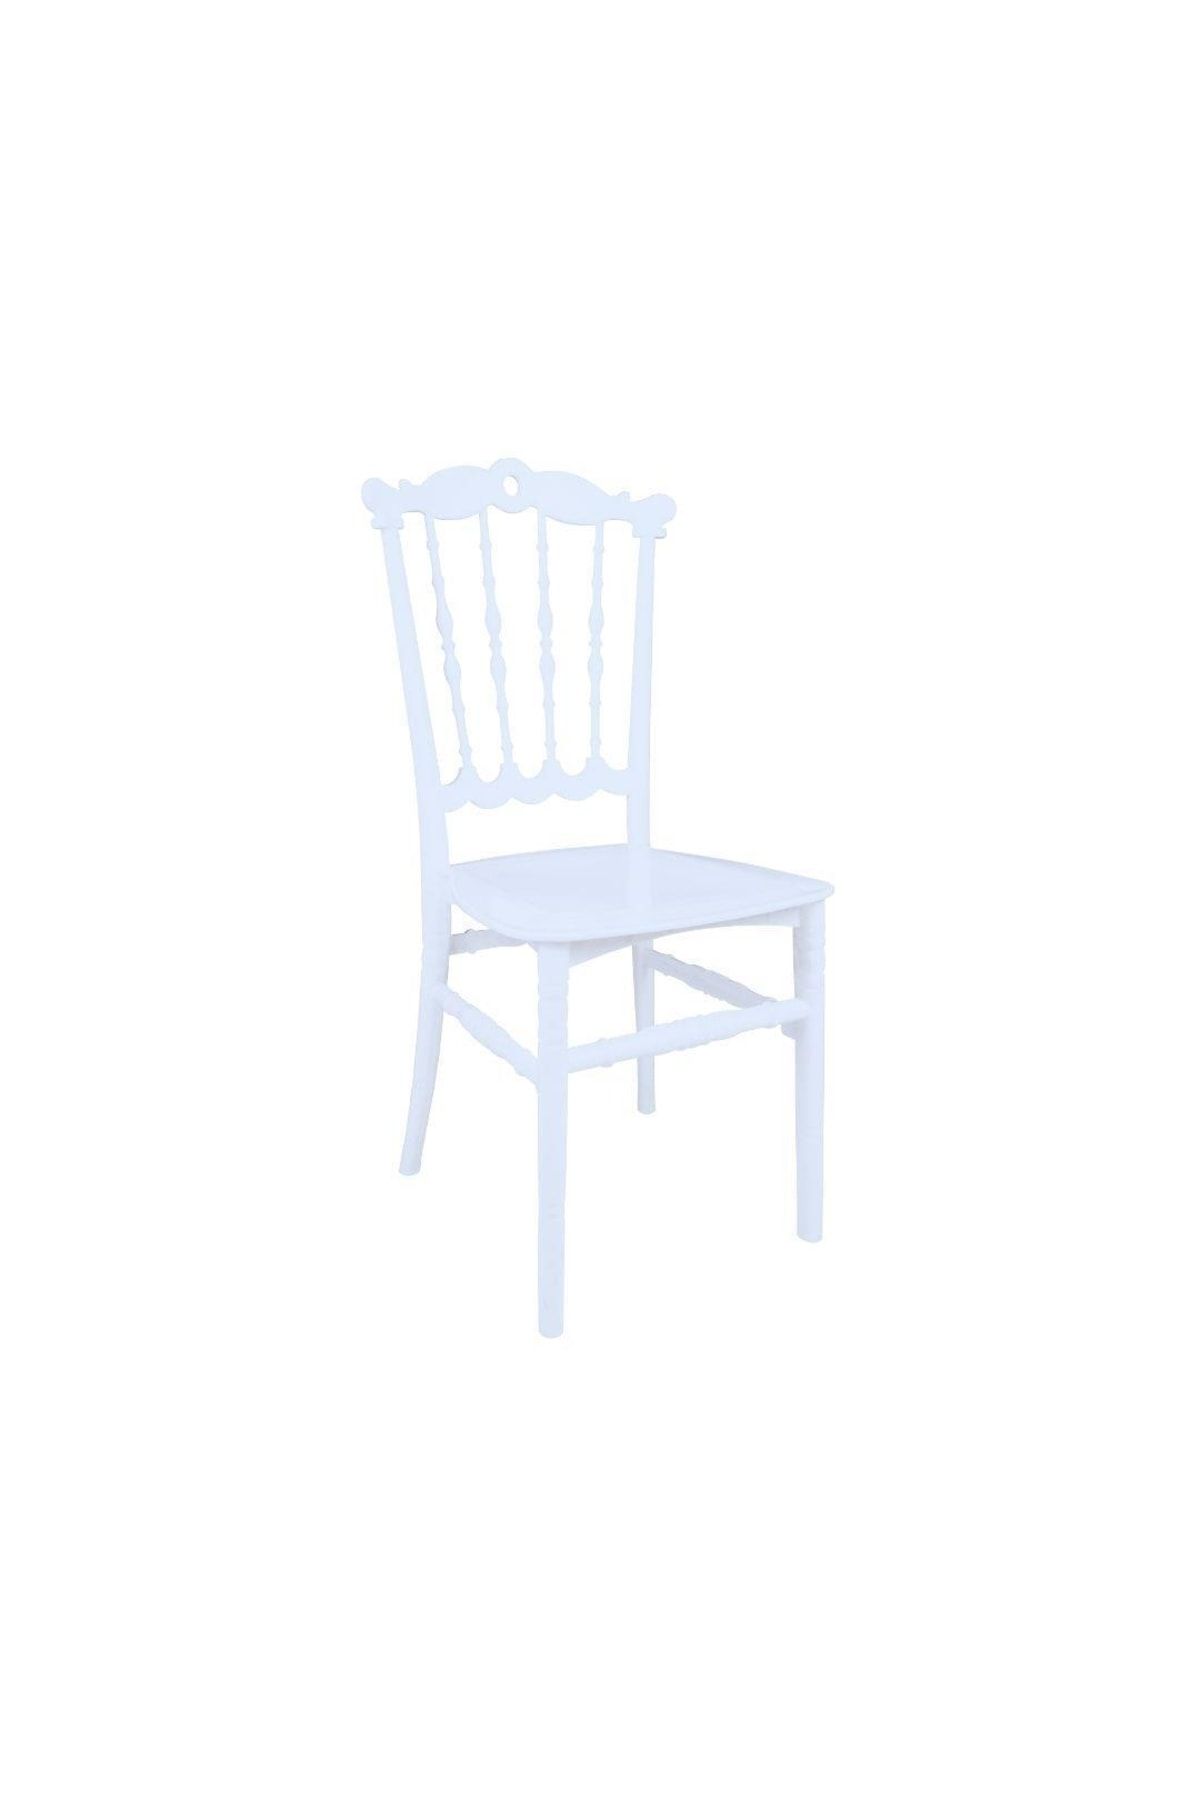 Mandella Karmen Düğün Sandalyesi Model 5 Beyaz (1 ADET)